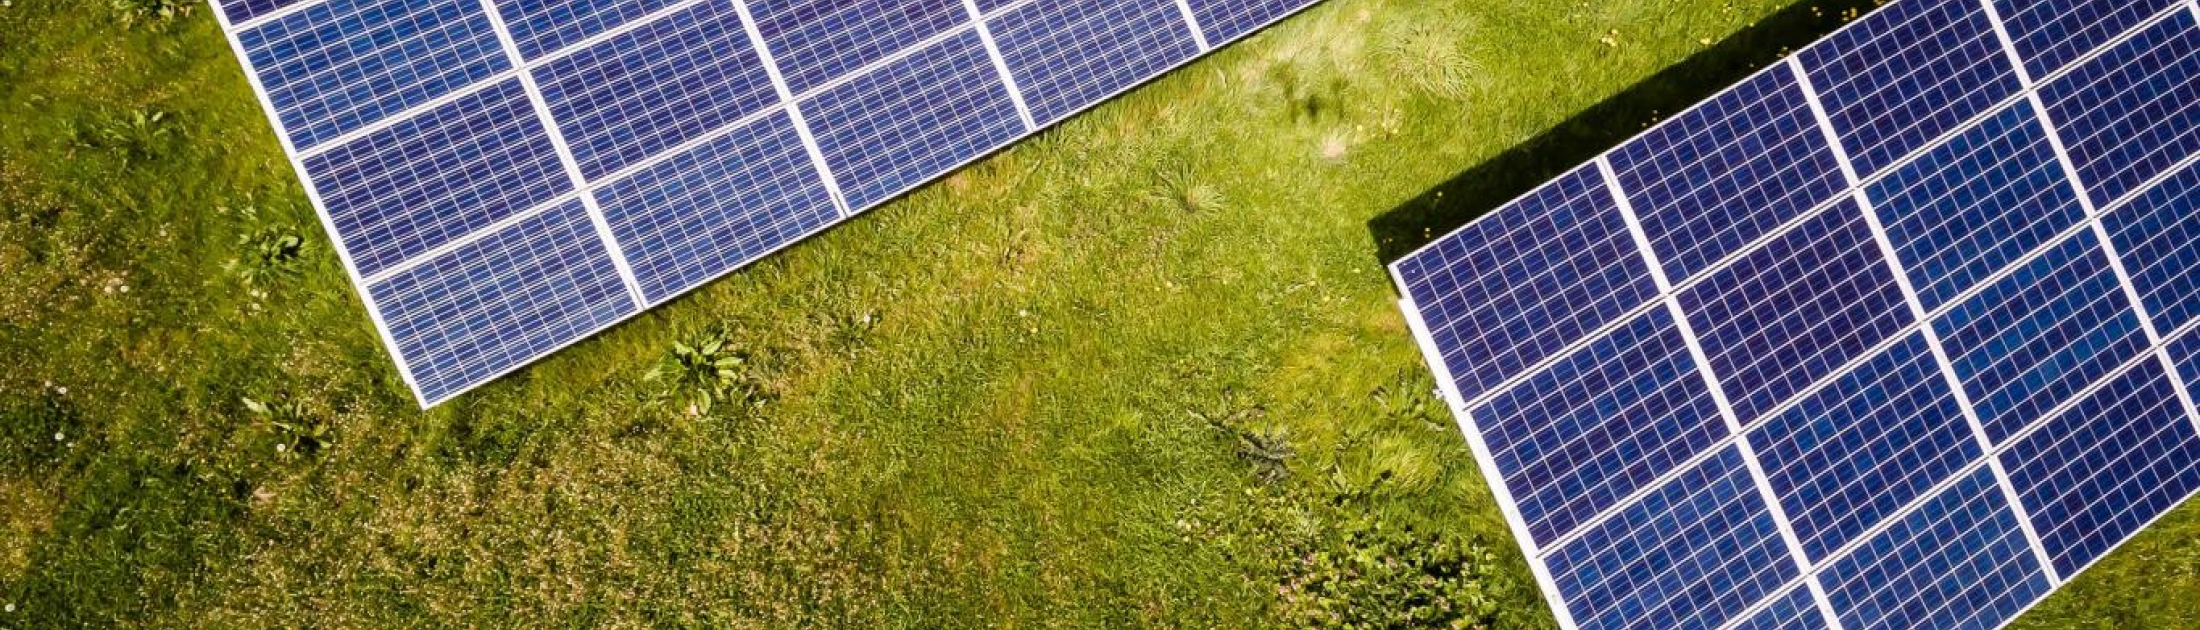 Nettoyage de panneaux solaires photovoltaïques